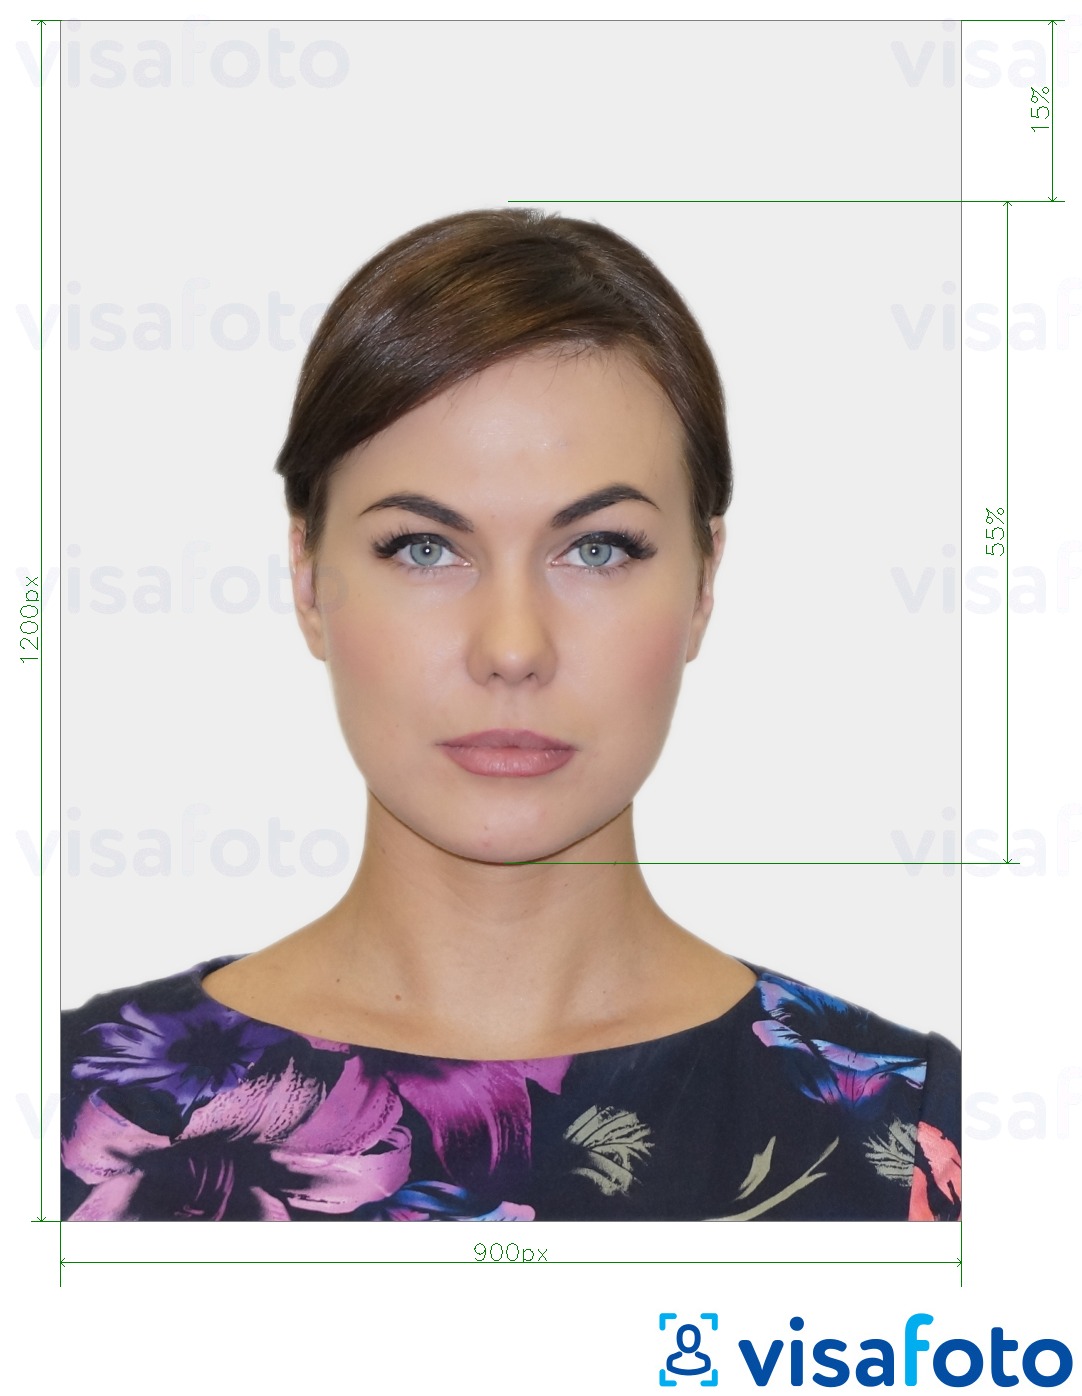 Exemplu de fotografie pentru UK Passport online cu aceeași dimensiune indicată